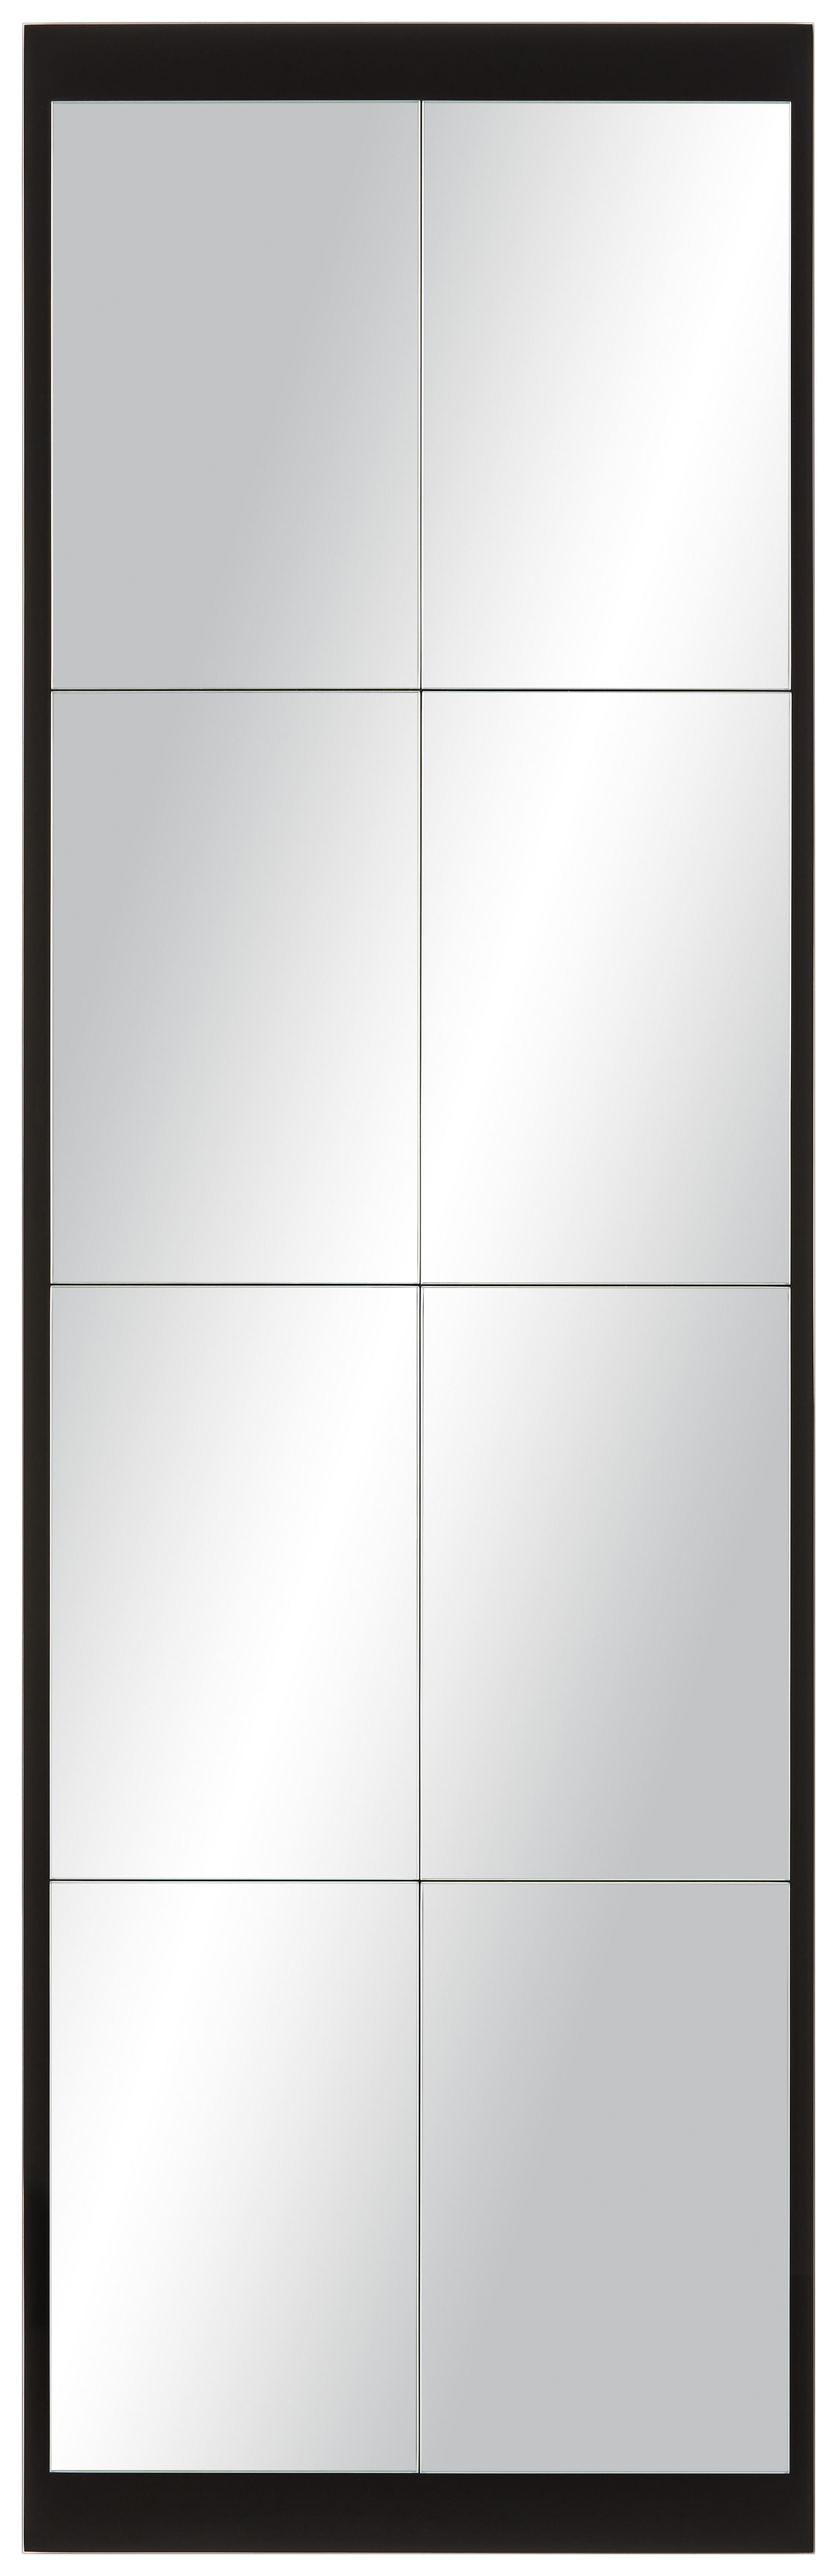 Stensko Ogledalo Industrial Ii - črna, Moderno, steklo (43/137cm) - Modern Living